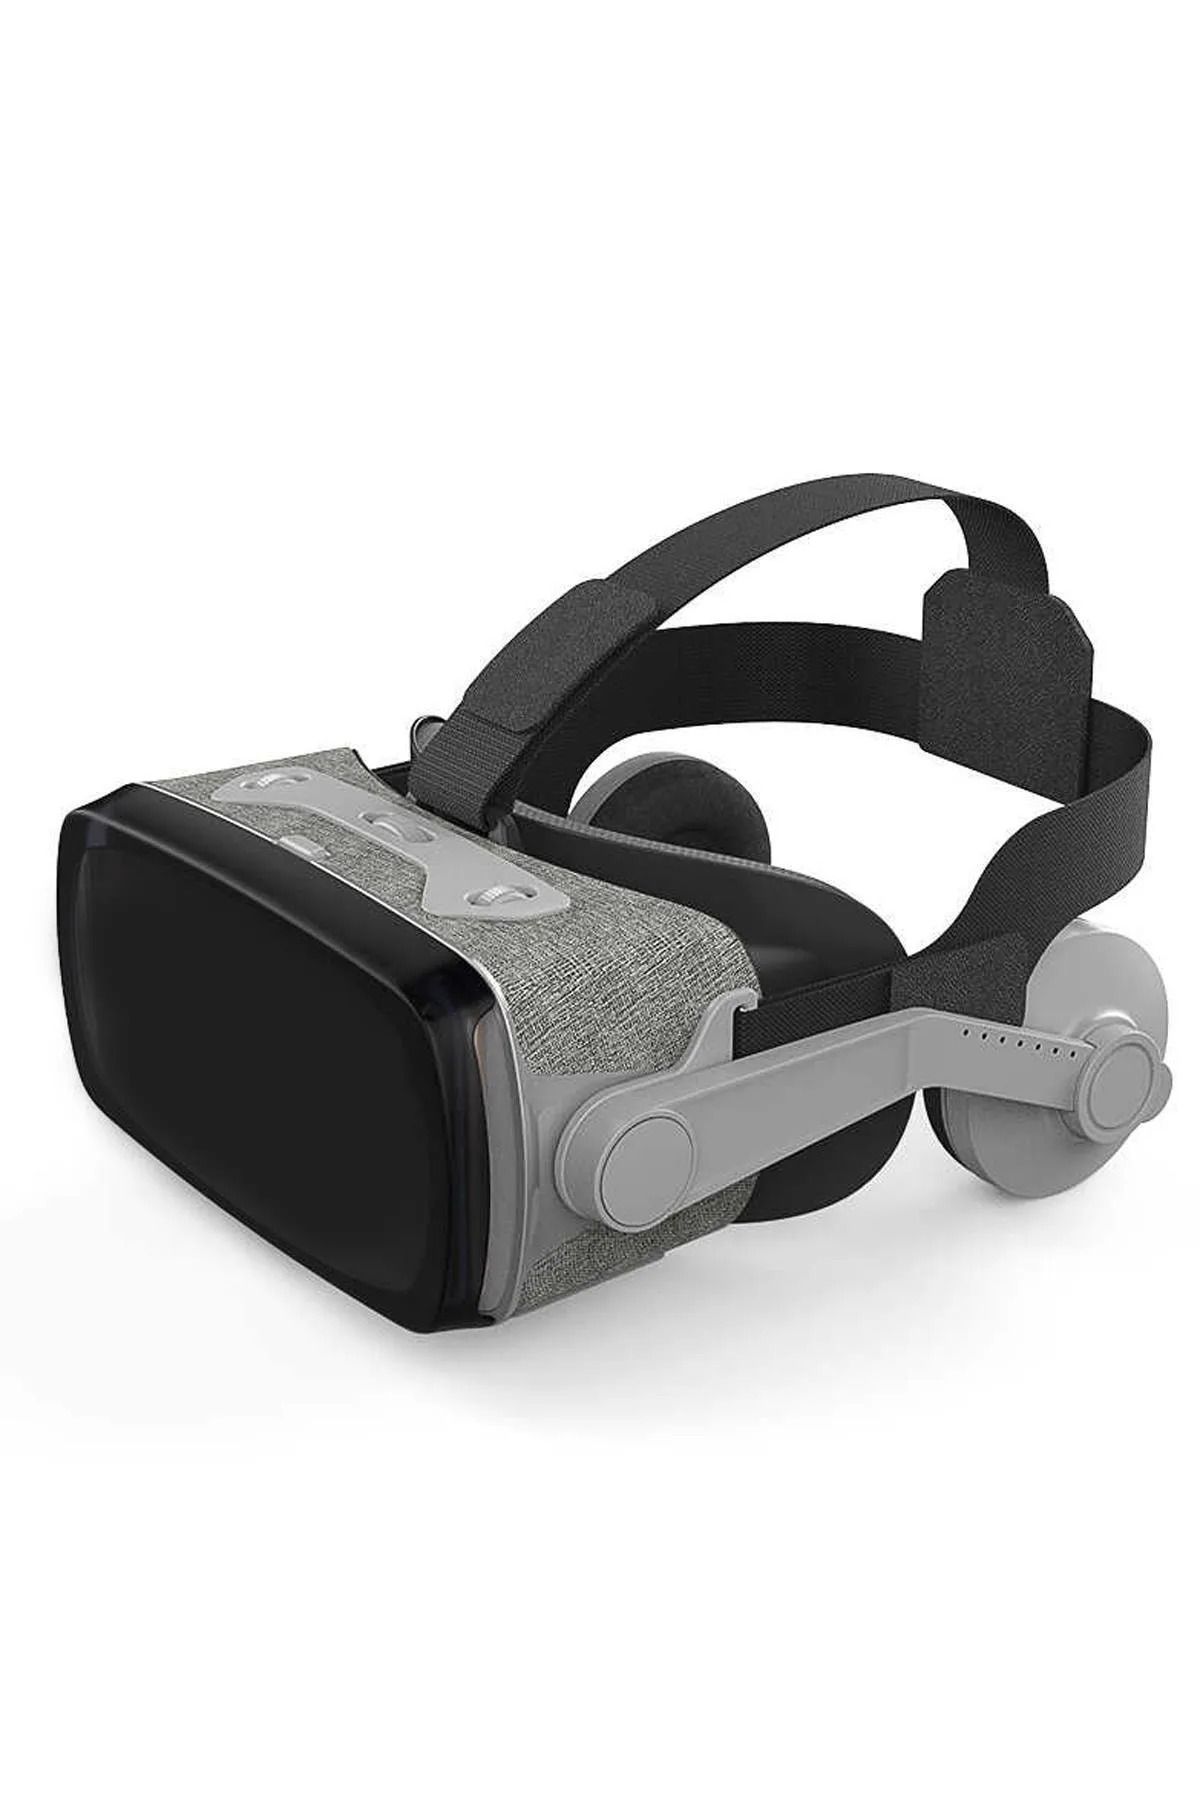 LEN10 Sanal Gerçeklik Gözlüğü Kulaklıklı 3d Vr Filmler Video ve Oyun VR Gözlük